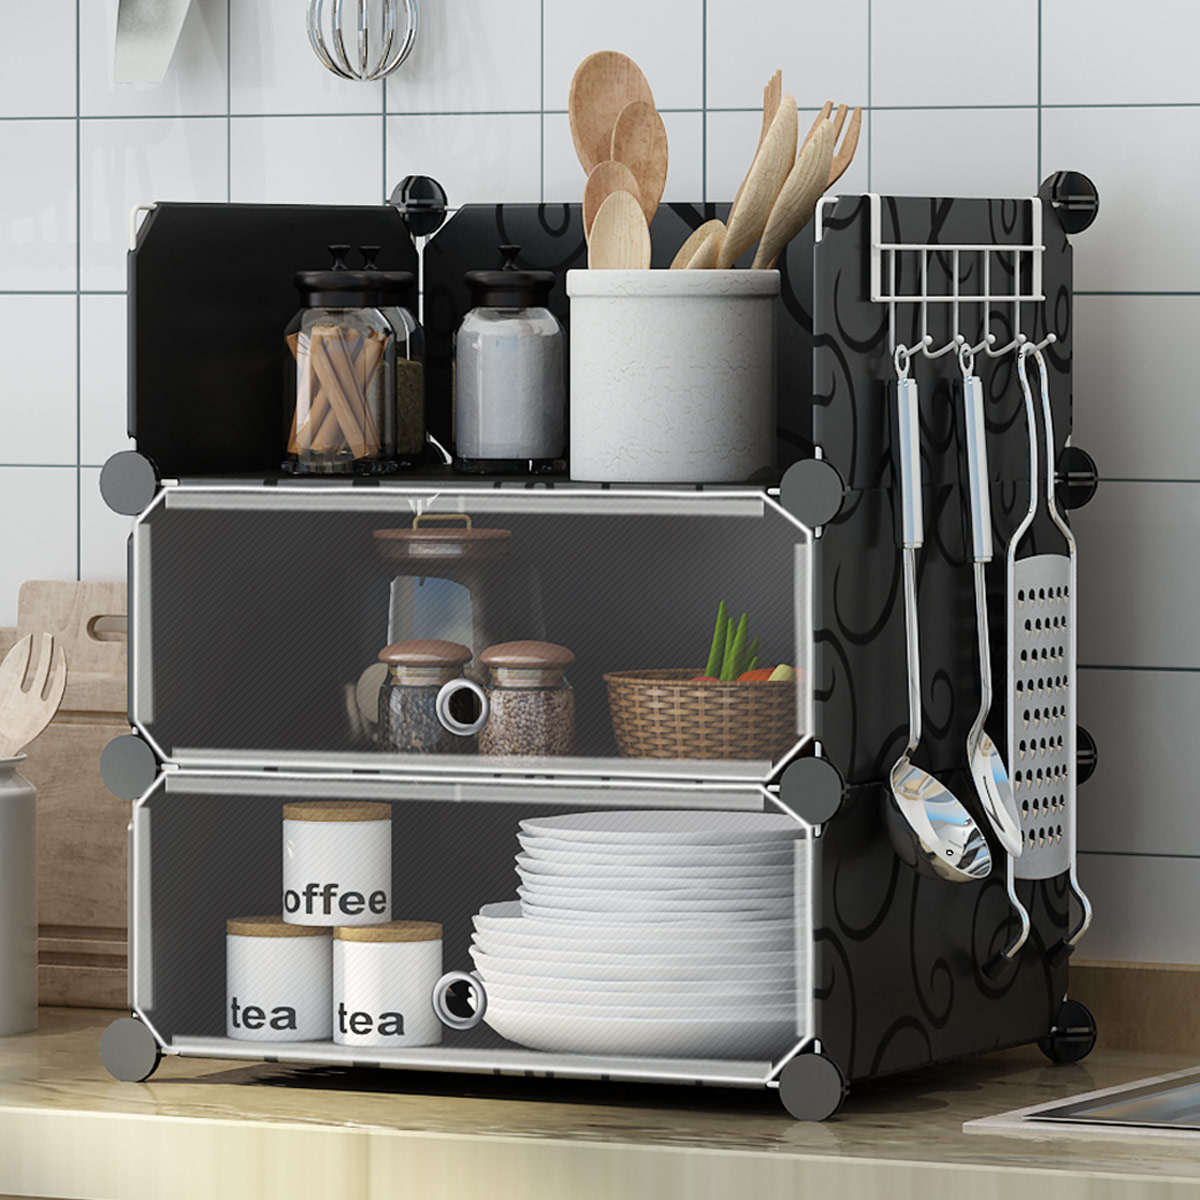 【终身质保免费换新】小型碗柜简易橱柜多功能厨房家用组装置物柜塑料